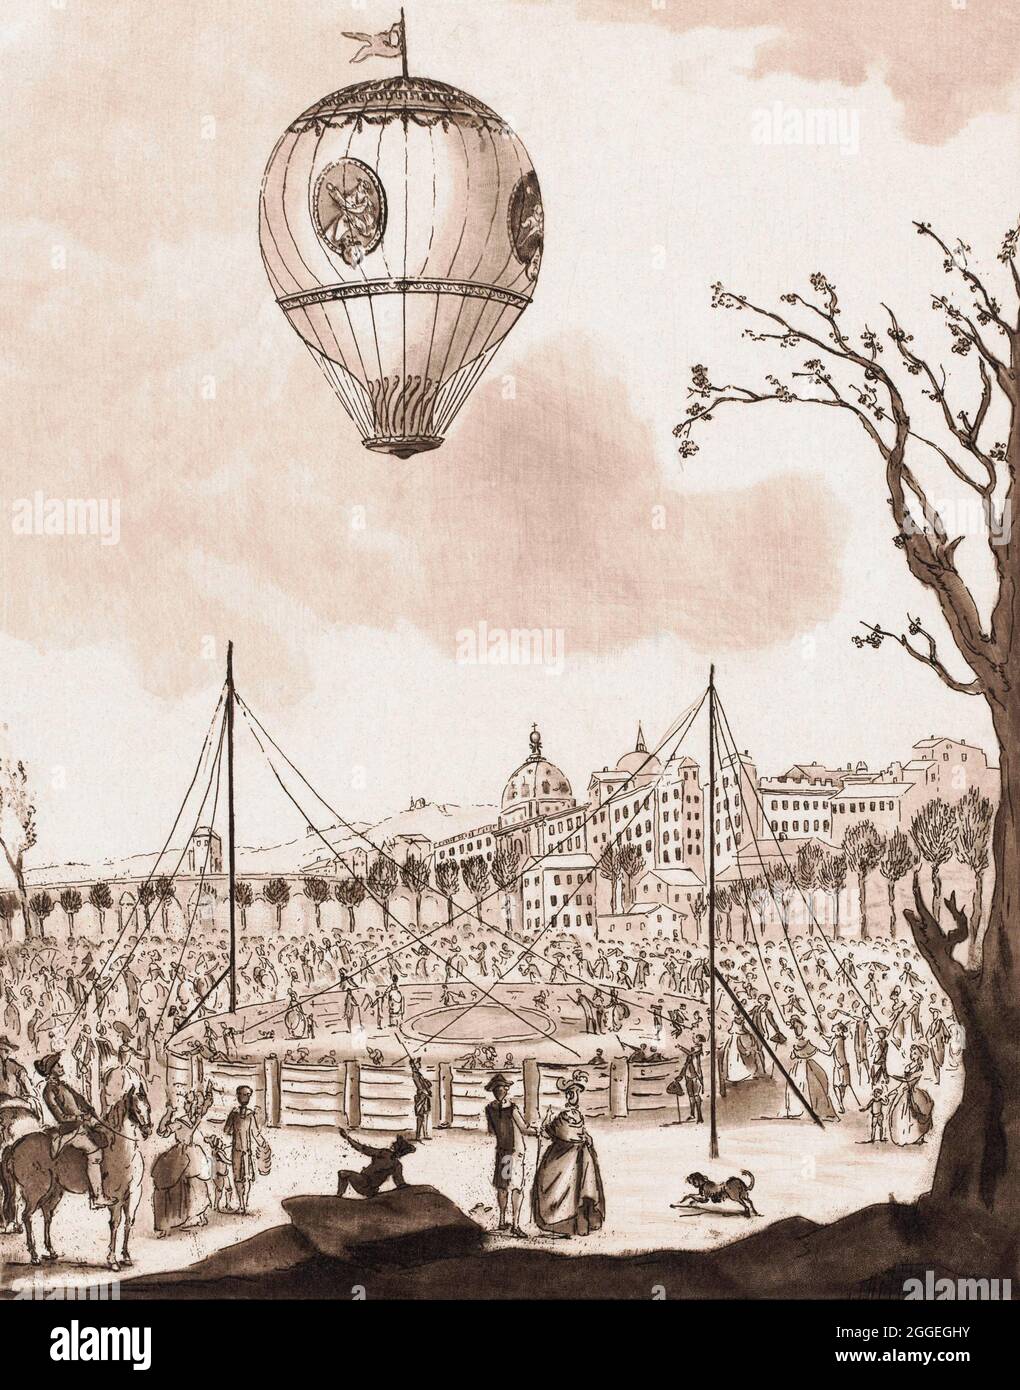 Vol en montgolfière le 19 janvier 1784 piloté par Joseph-Michel Montgolfier, 1740 – 1810 et Jean-François Pilatre de Rozier, 1754 - 1785 et cinq autres. Le ballon appelé le Flesselles a été lancé à partir de Lyon, France. C'était l'un des plus grands ballons jamais lancés, y compris à ce jour, avec un volume d'environ 19,800 mètres cubes (environ 700.000 pieds cubes). Le Flesselle n'a réussi à voler que 13 minutes avant de commencer à fuir son air chaud. Il a atterri en toute sécurité et personne n'a été blessé. Banque D'Images